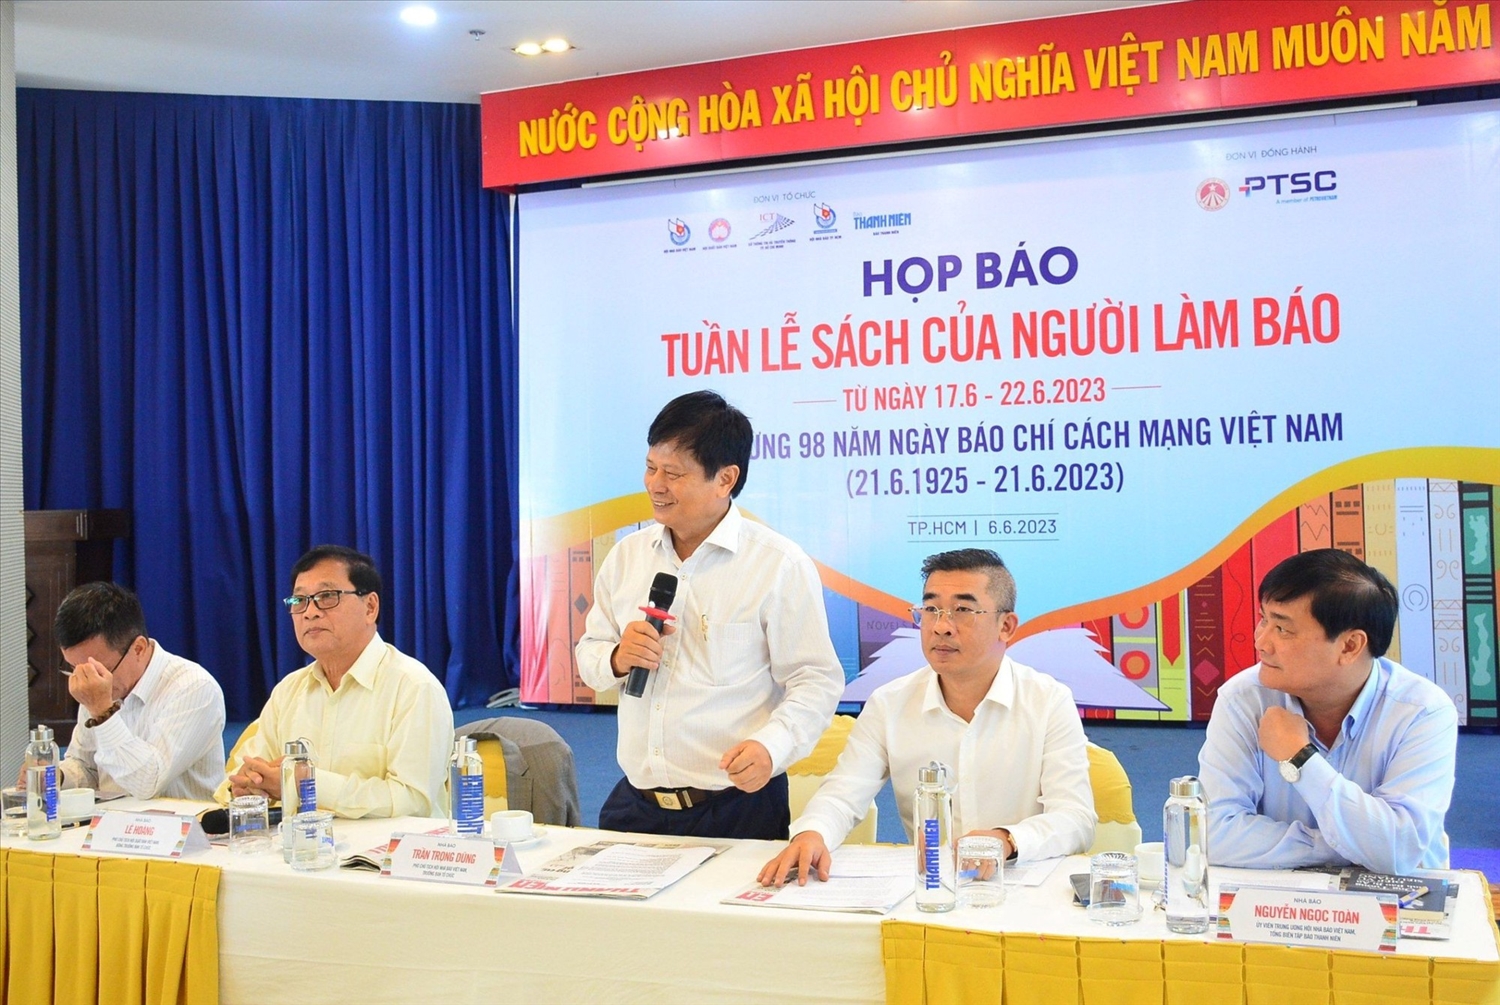 Nhà báo Trần Trọng Dũng, Phó Chủ tịch Hội nhà báo Việt Nam trả lời báo chí tại họp báo công bố Tuần lễ sách của người làm báo - Ảnh: VGP/Huy Phạm